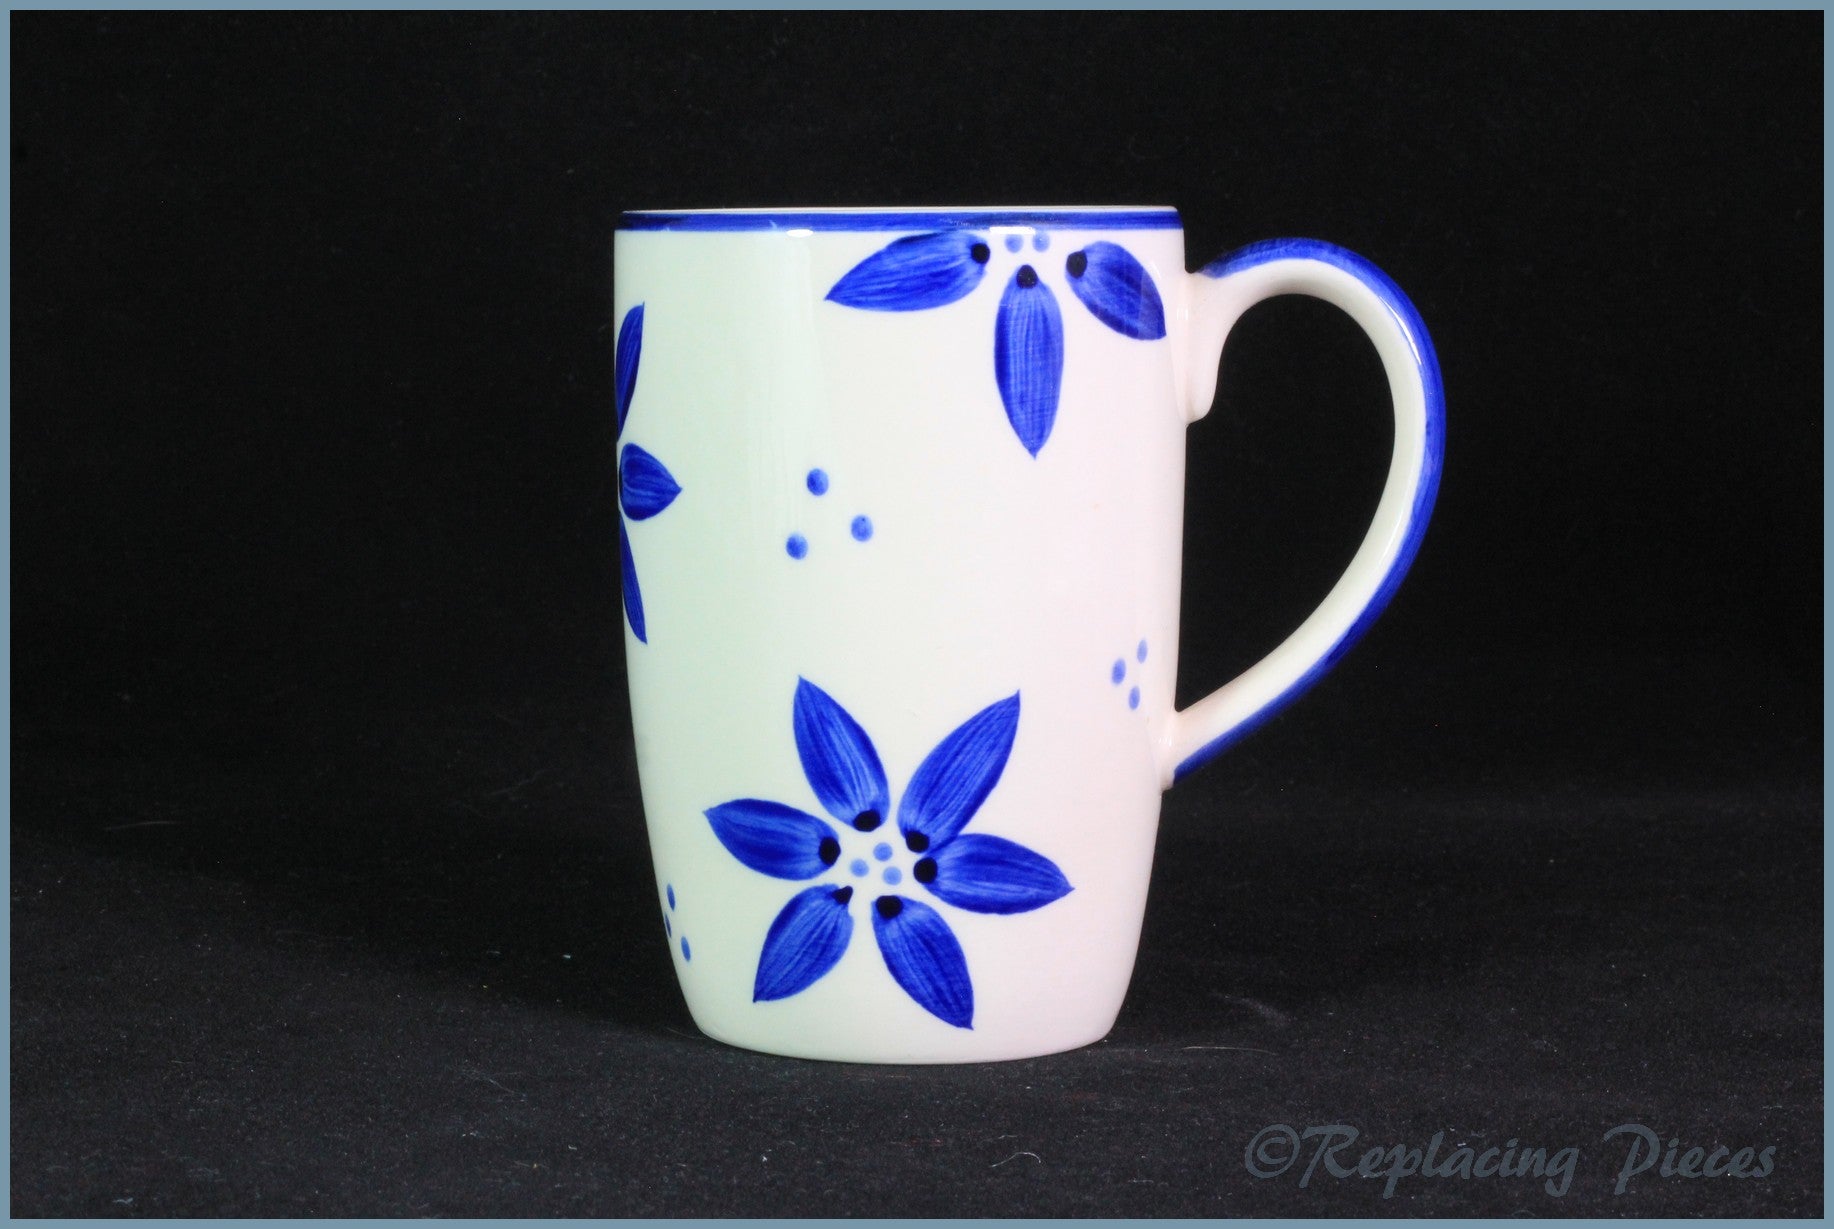 RPW66 - Whittards - Mug (Blue Flowers)